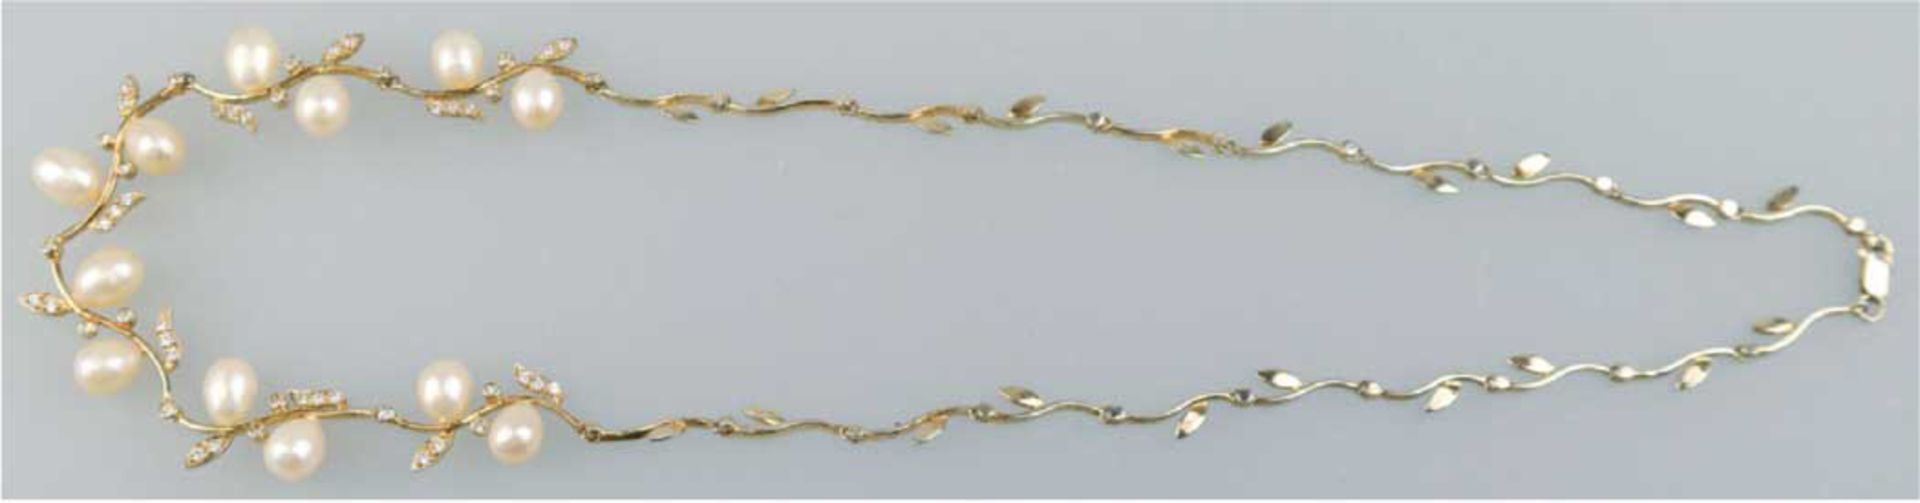 Collier, 925er Silber, vergoldet, florale Gestaltung mit Zirkonbesatz auf Blättern undBarock-